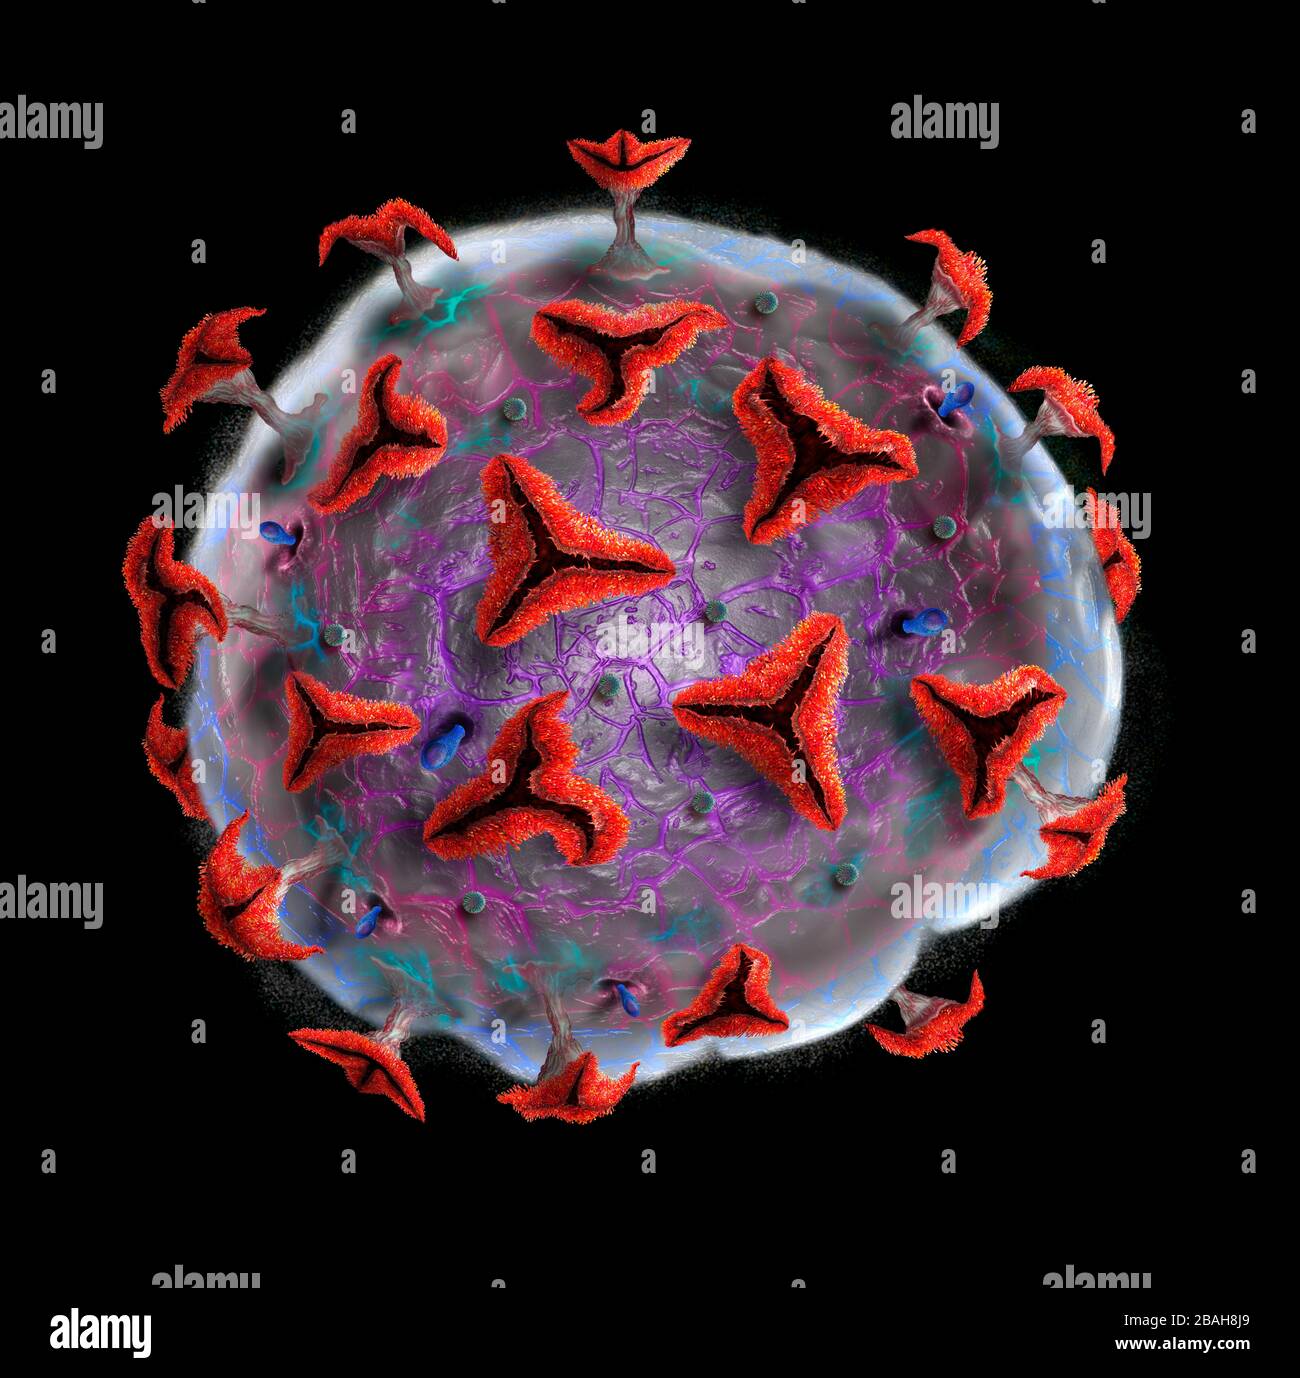 Coronavirus particle, illustration Stock Photo